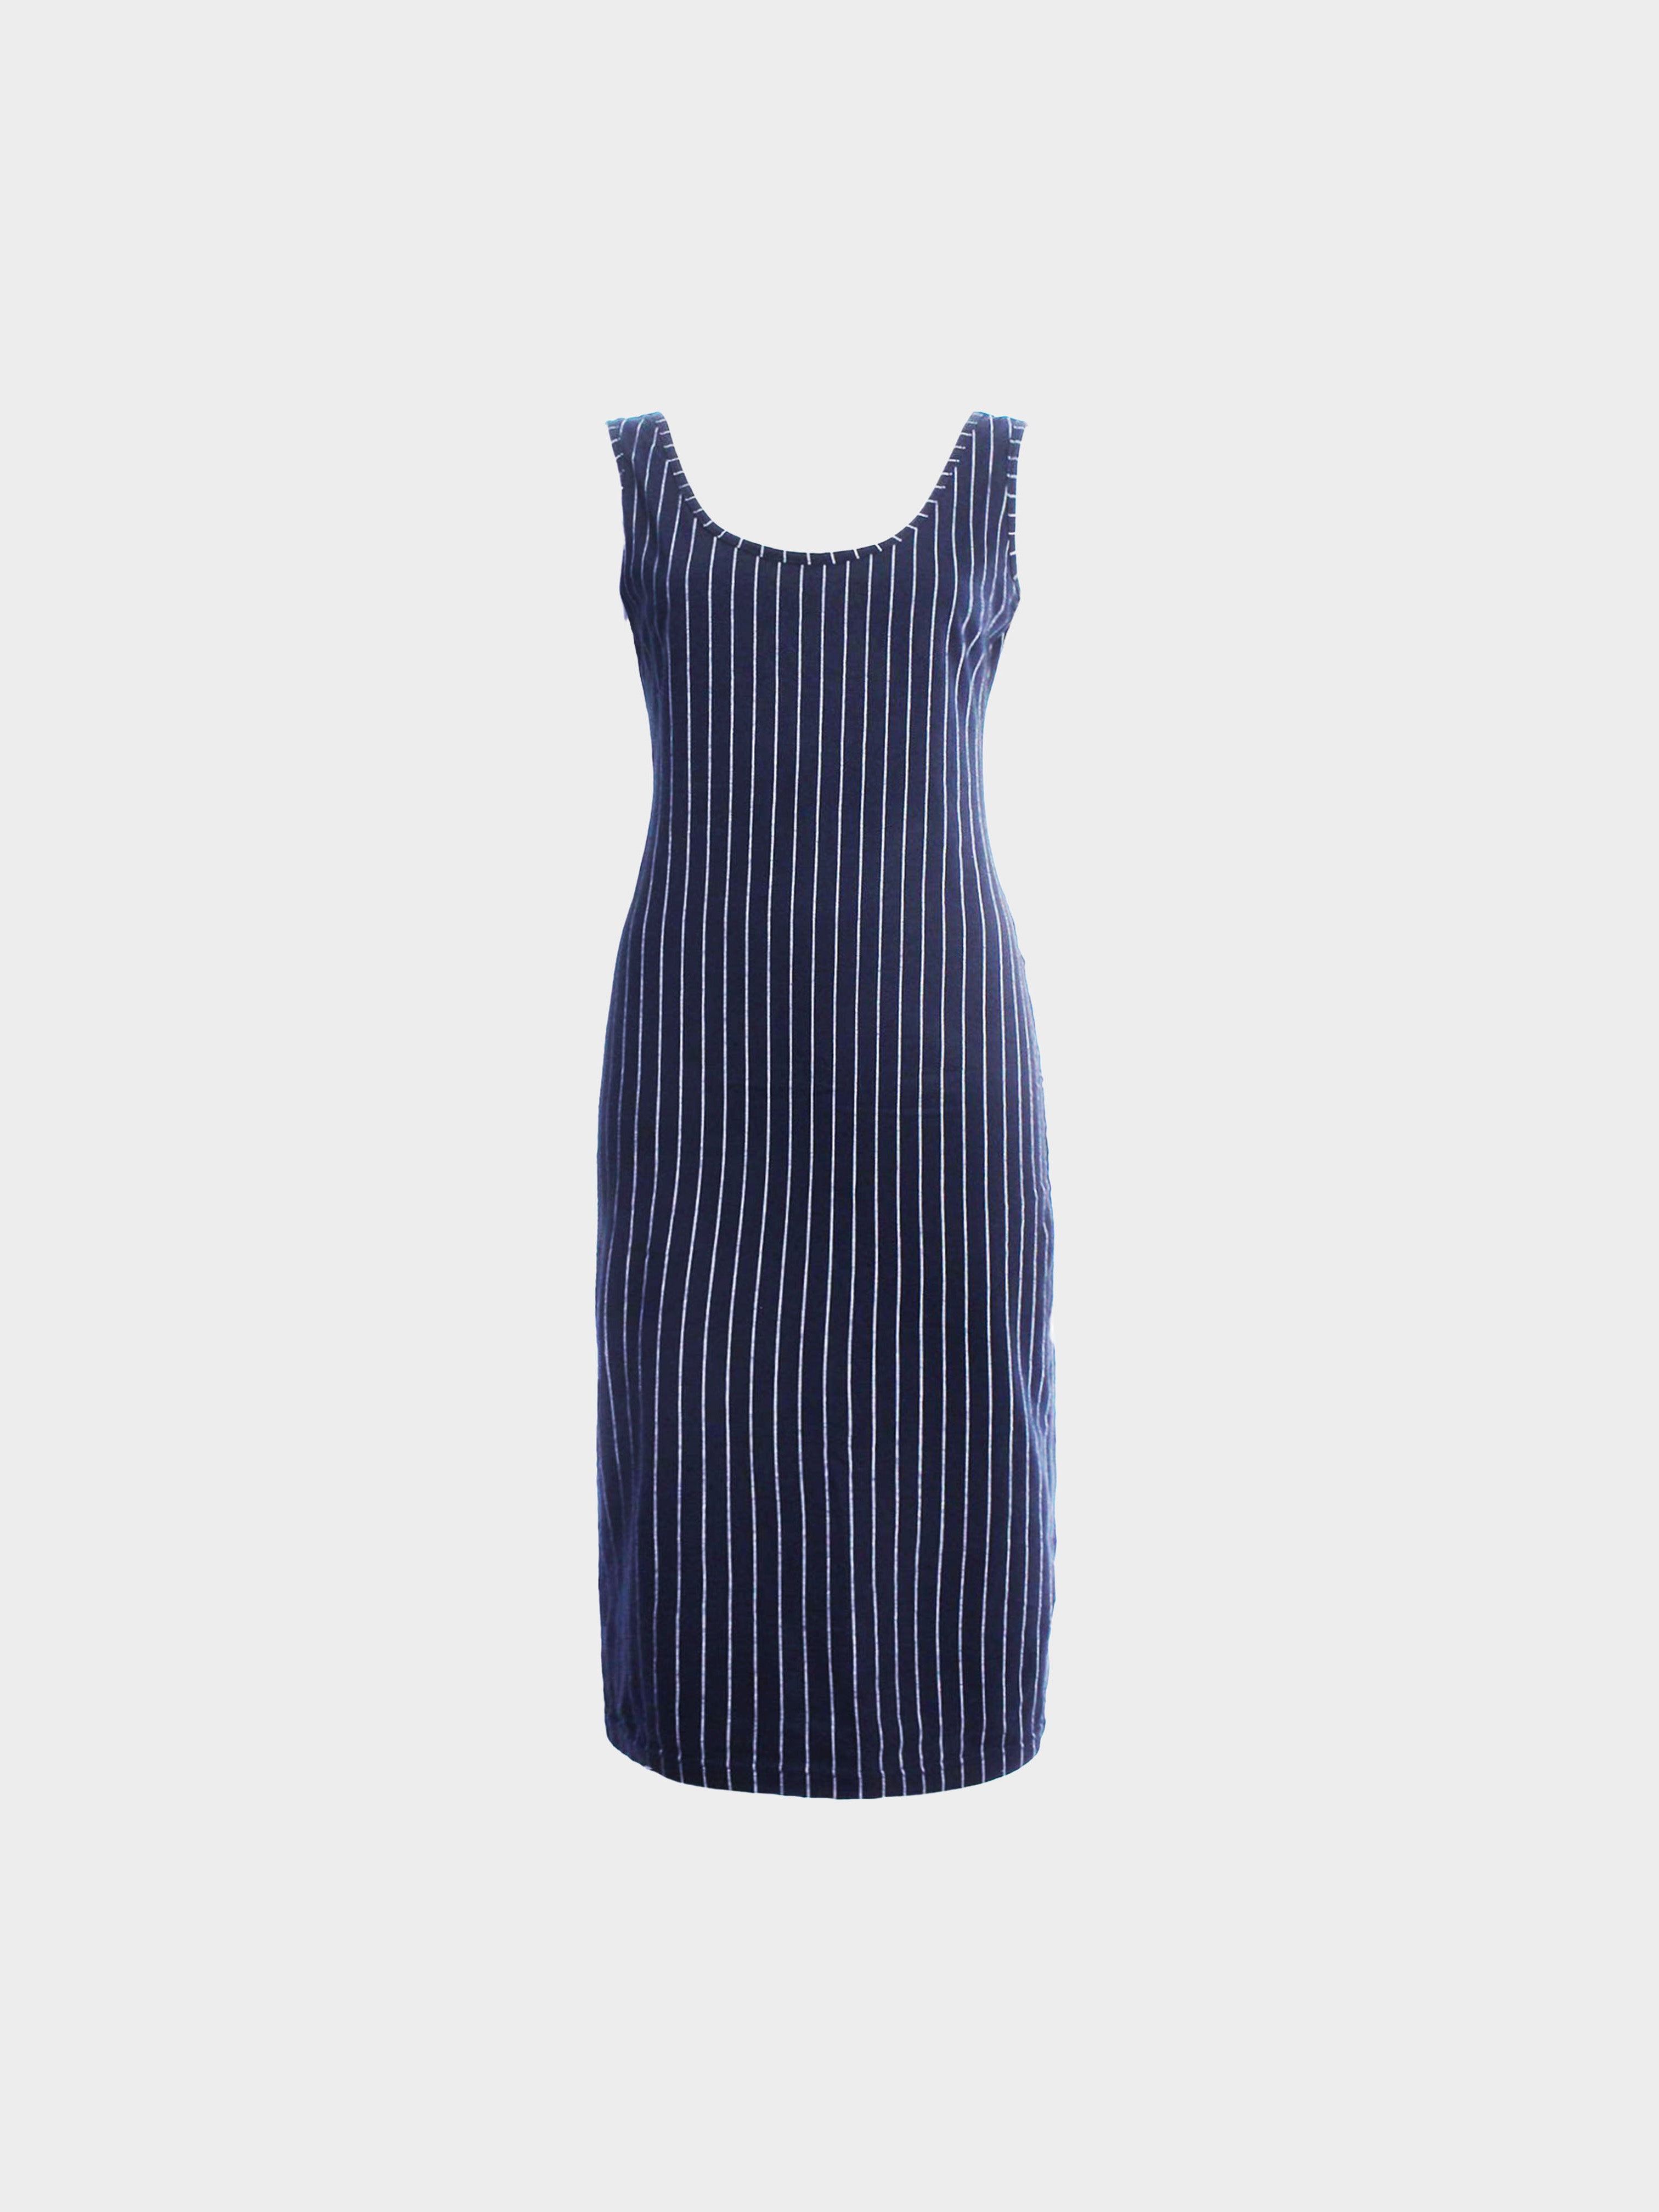 Jean Paul Gaultier 1990s CLASSIQUE Navy Pinstriped Sleeveless Dress